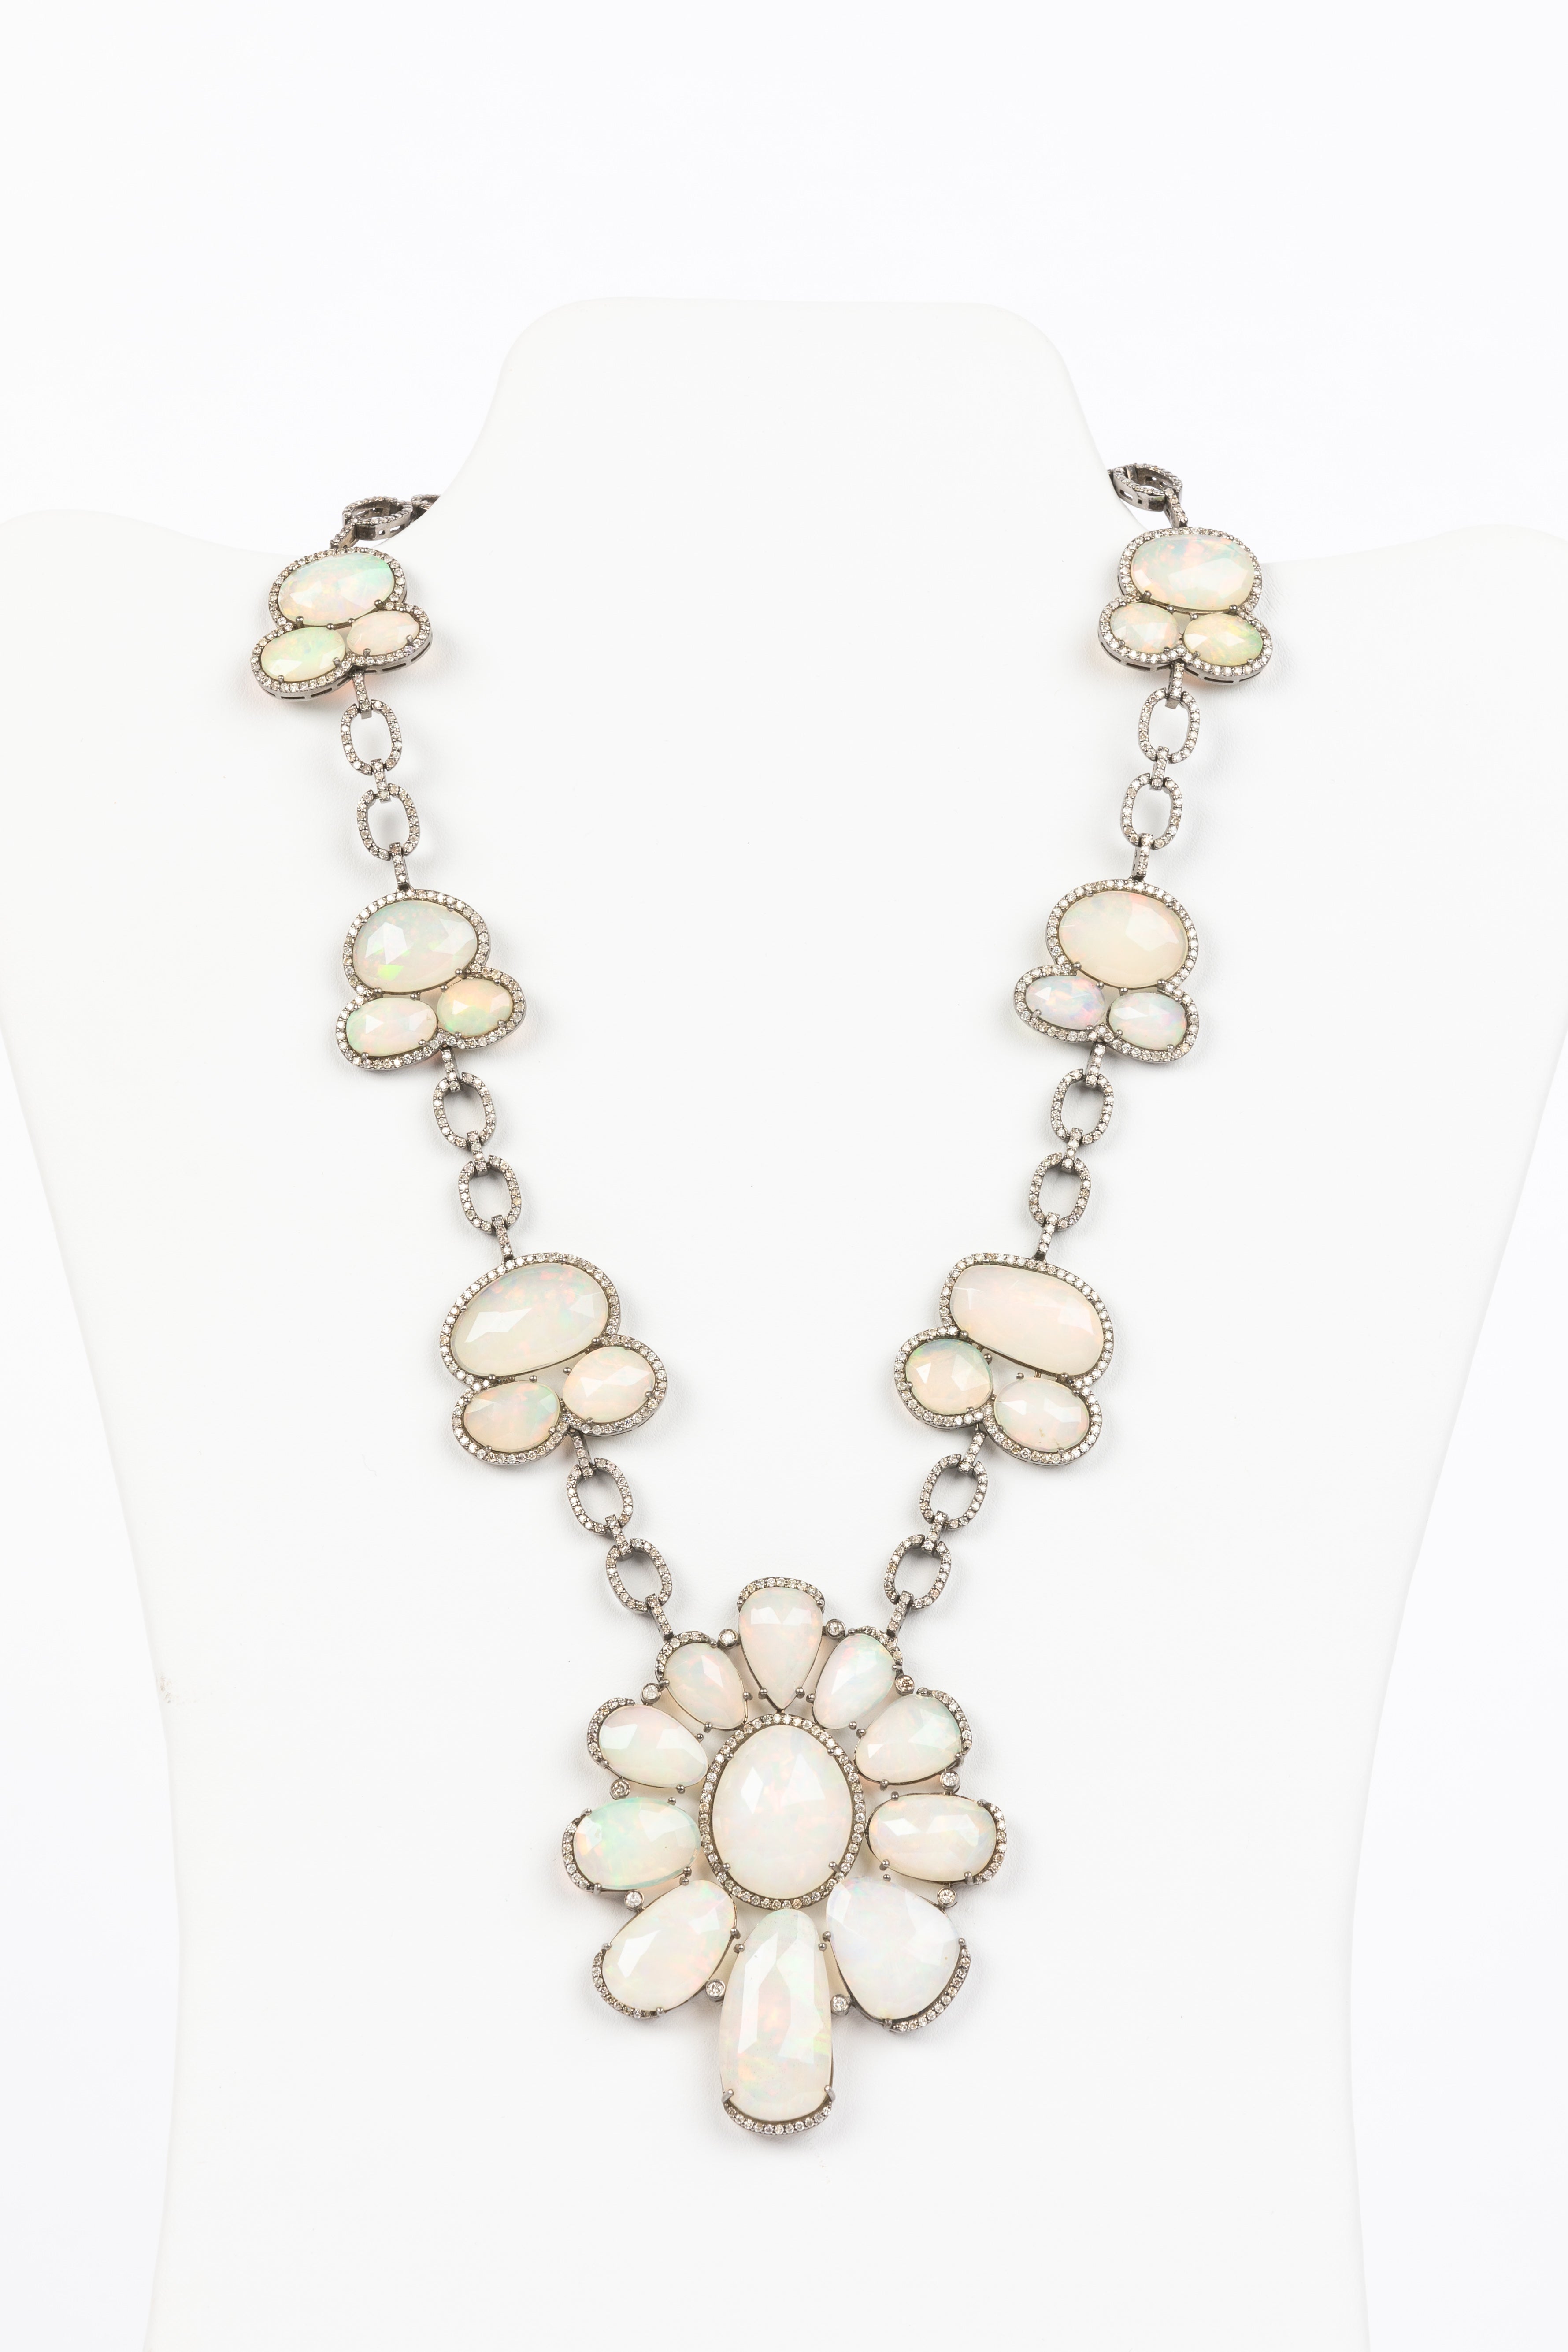 Pave Diamond, Opal Statement Necklace